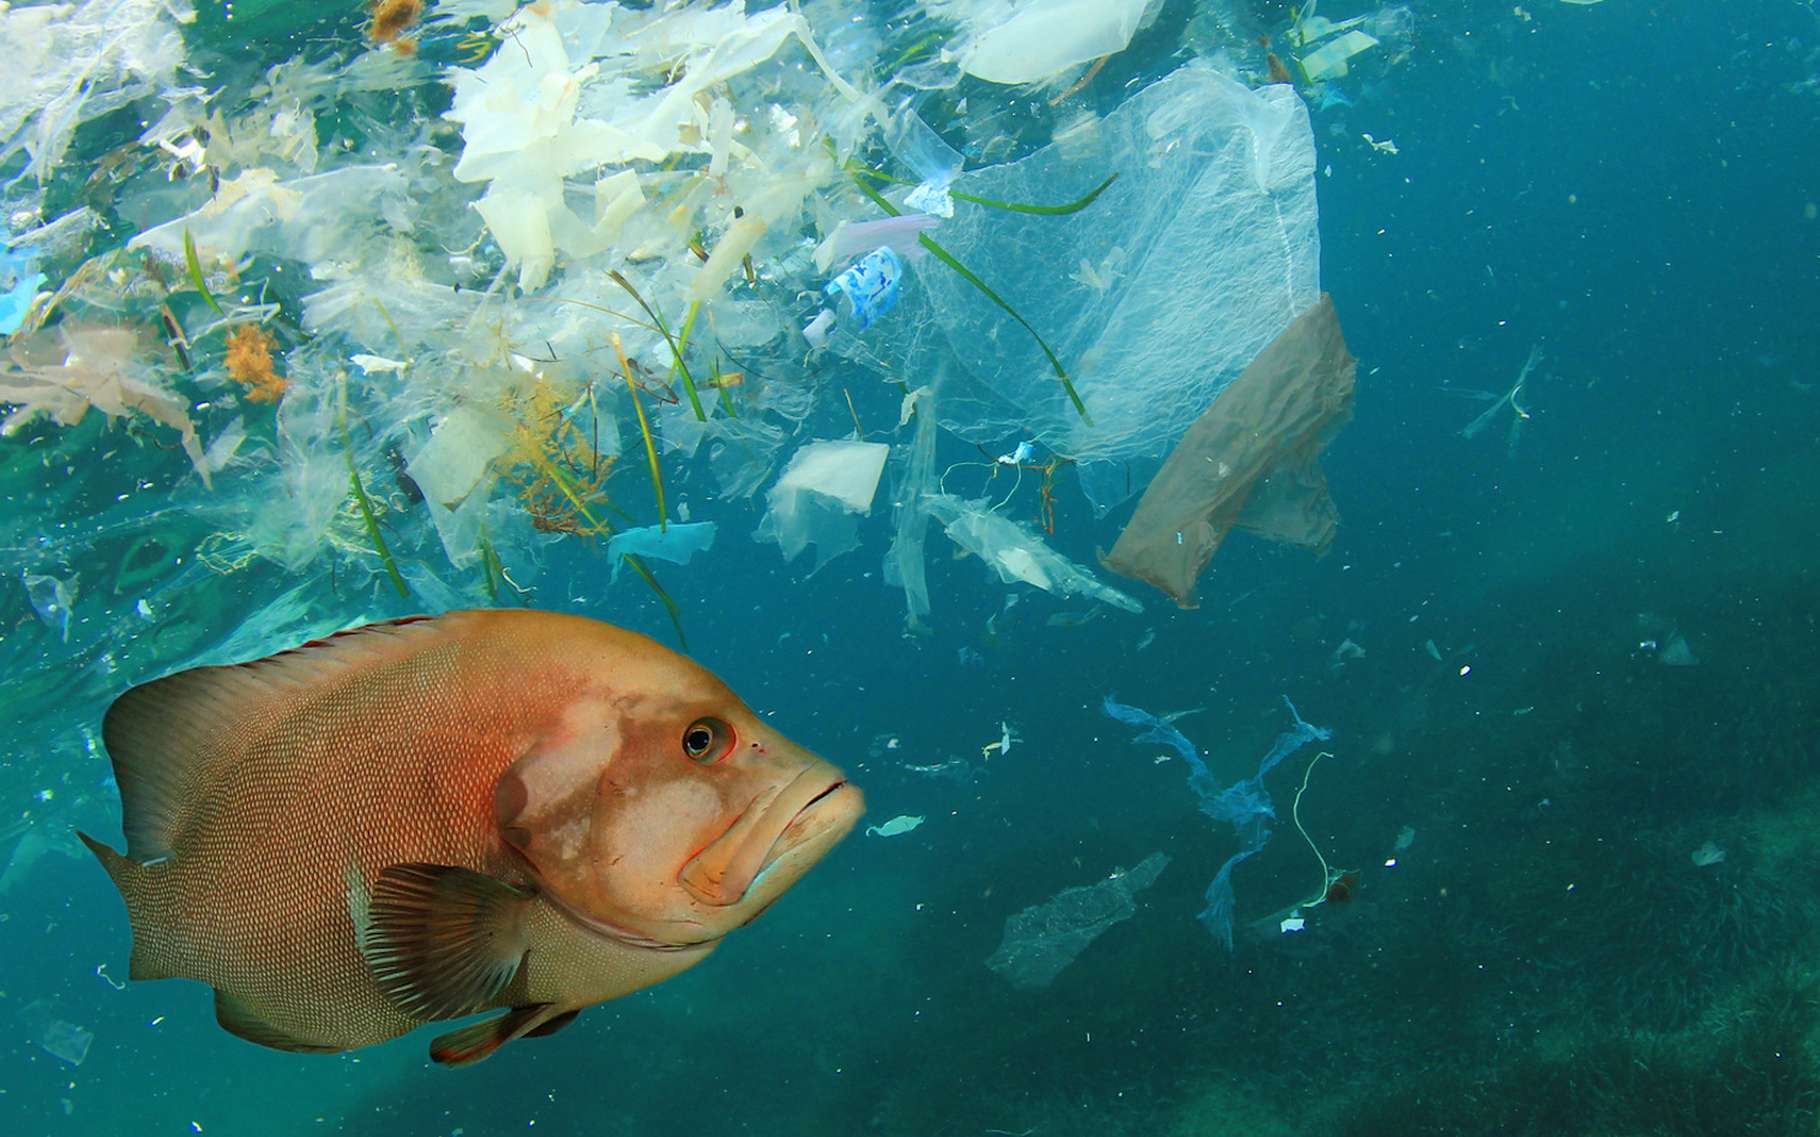 Les microplastiques dans l'océan sont sous-estimés